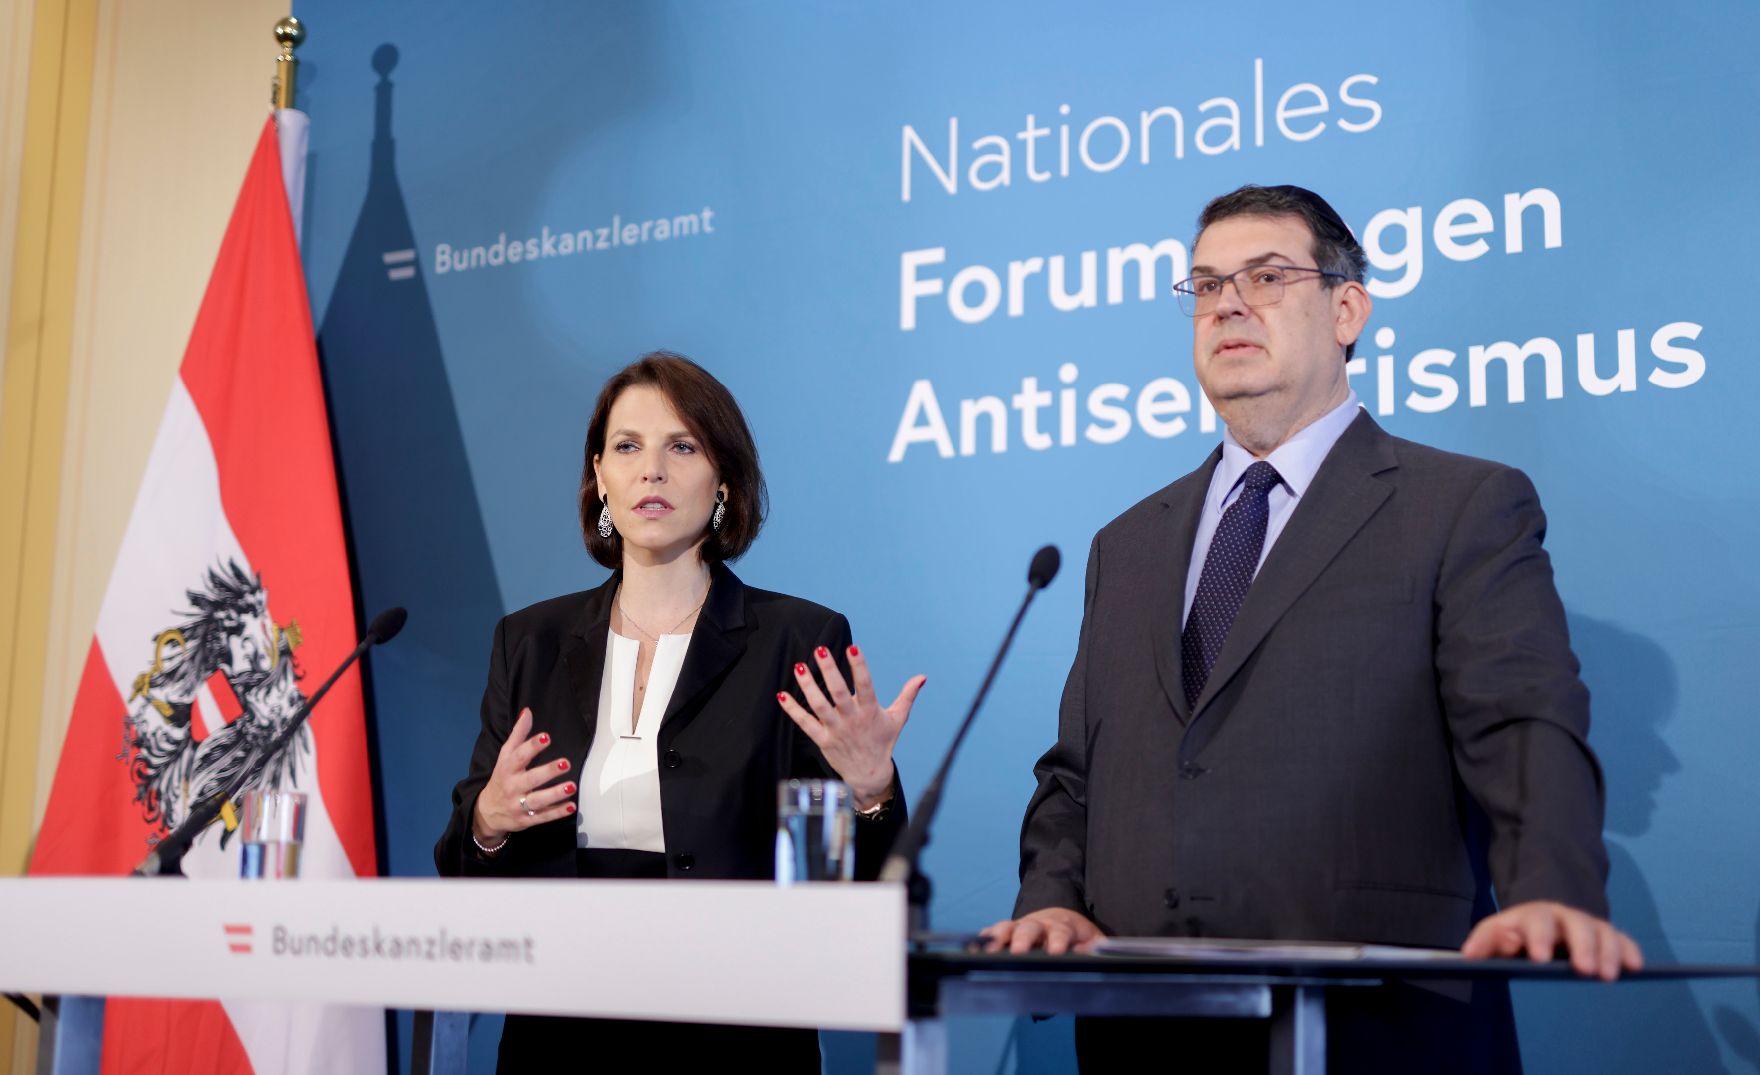 Am 13. Juni 2022 lud Bundesministerin Karoline Edtstadler (l.) gemeinsam mit dem Präsident der IKG Oskar Deutsch (r.) zu einem Forum gegen Antisemitismus ein. Im Bild bei der Pressekonferenz.